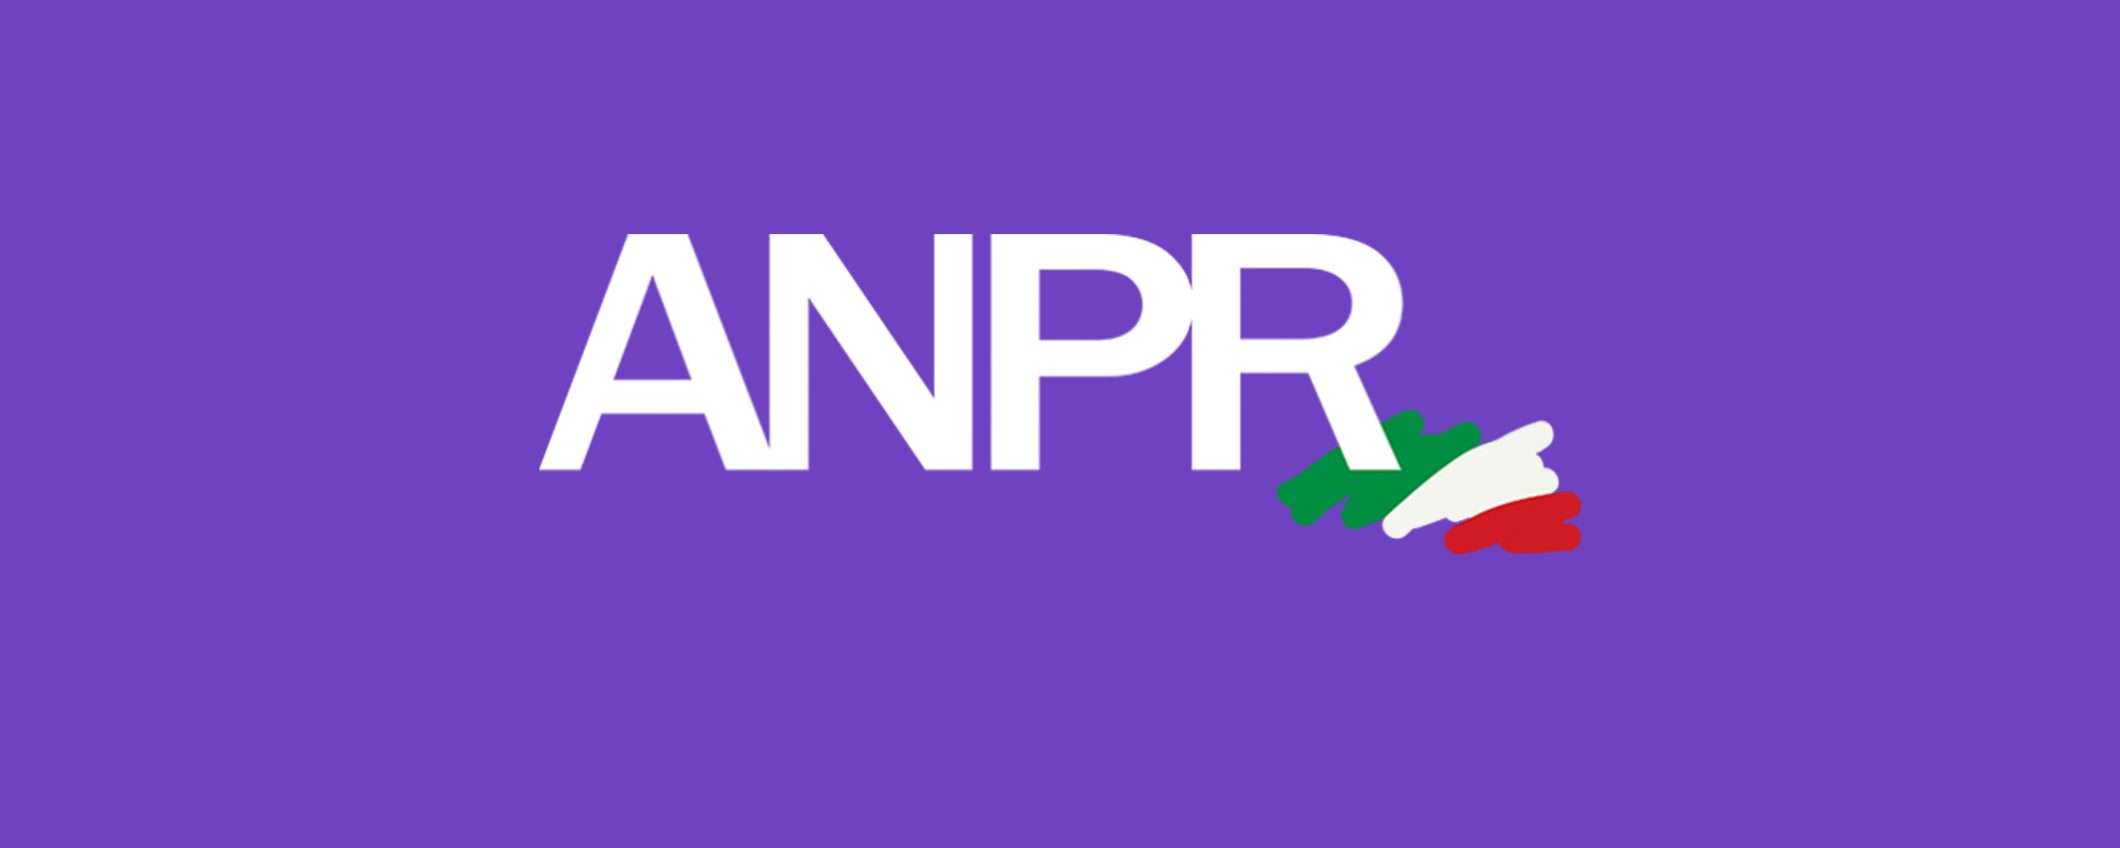 ANPR: online il nuovo sito per scaricare i certificati